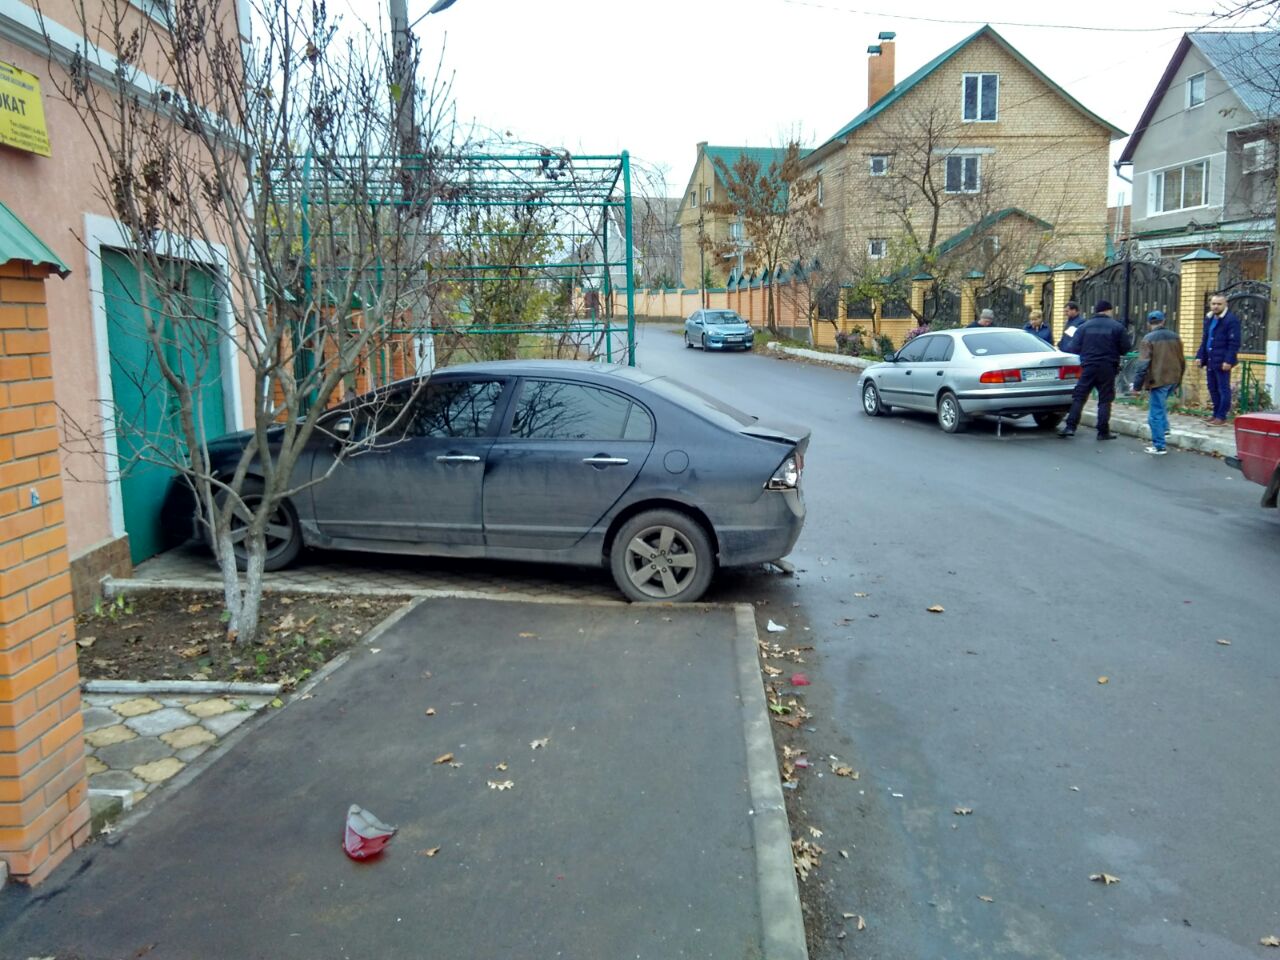 Измаил: на улице Короленко VW протаранил припаркованный возле дома автомобиль